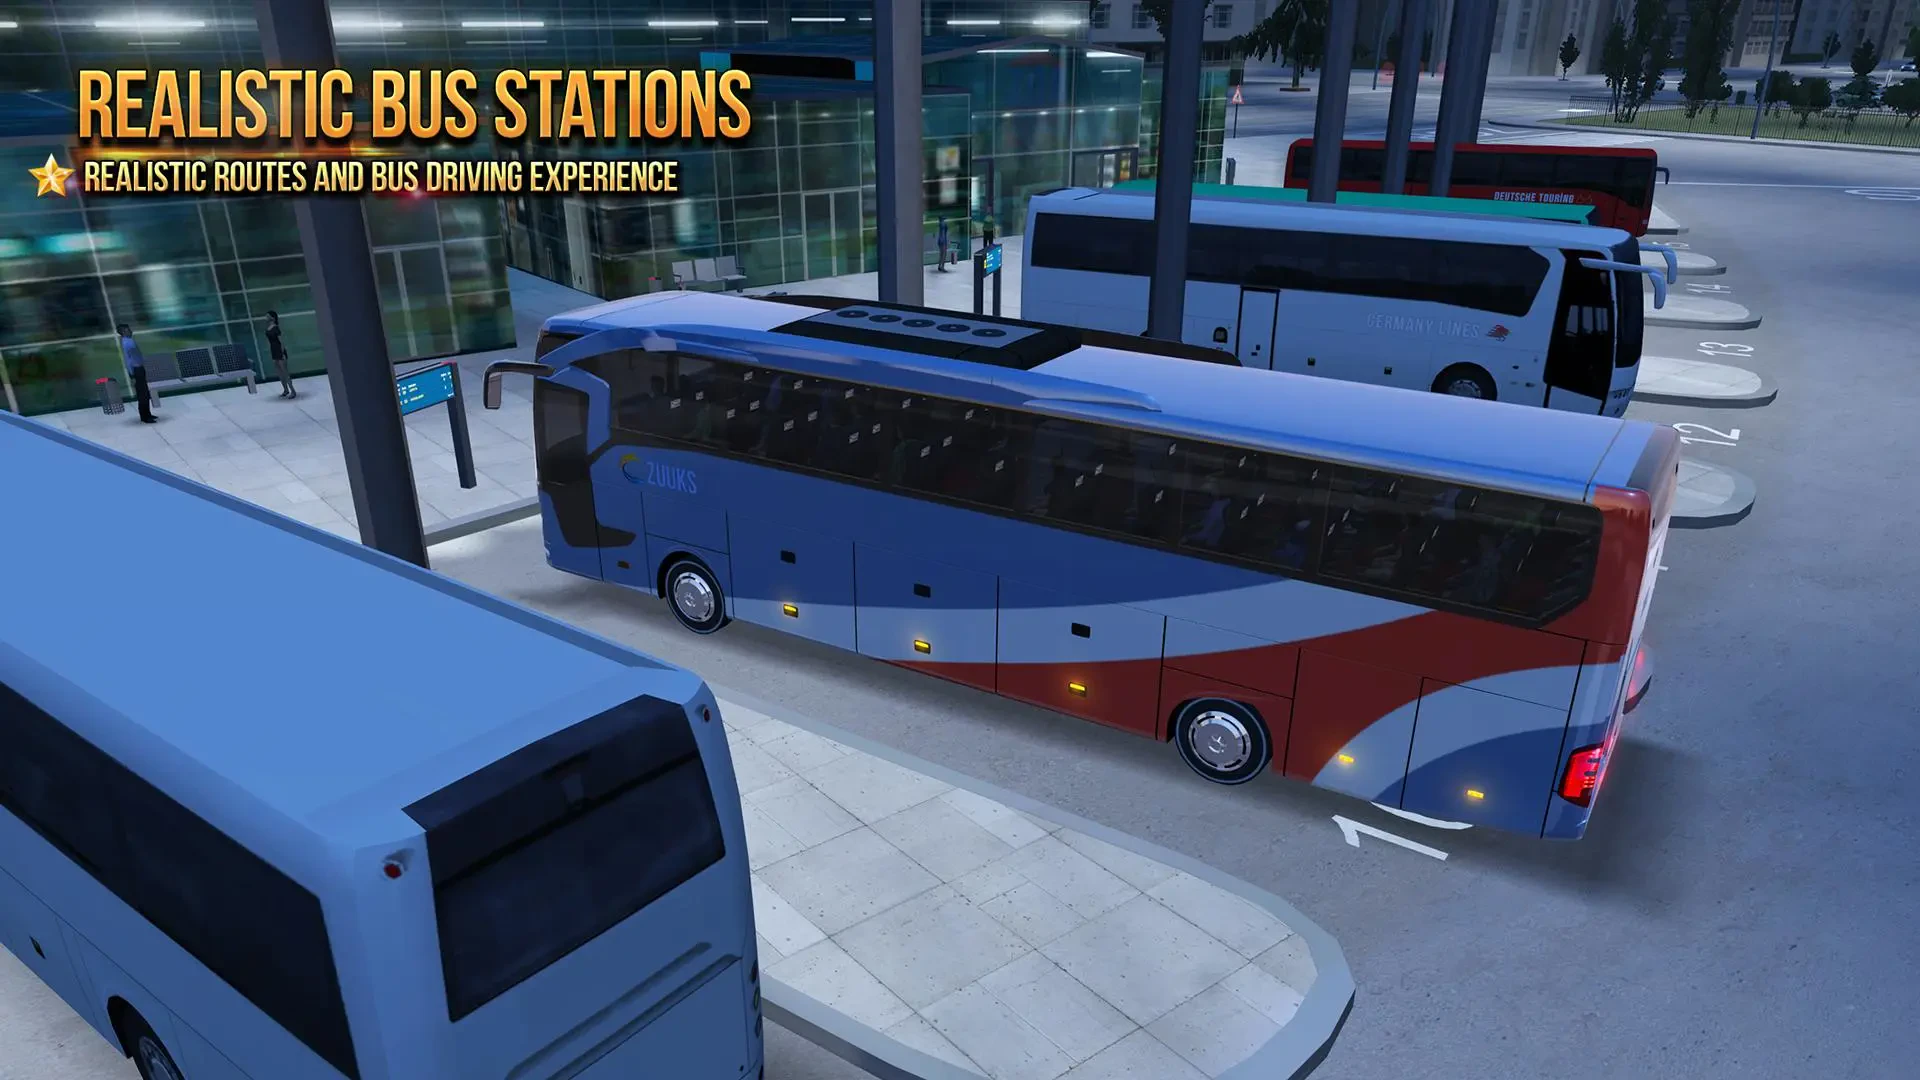 Brasil Bus Simulator para Android - Download